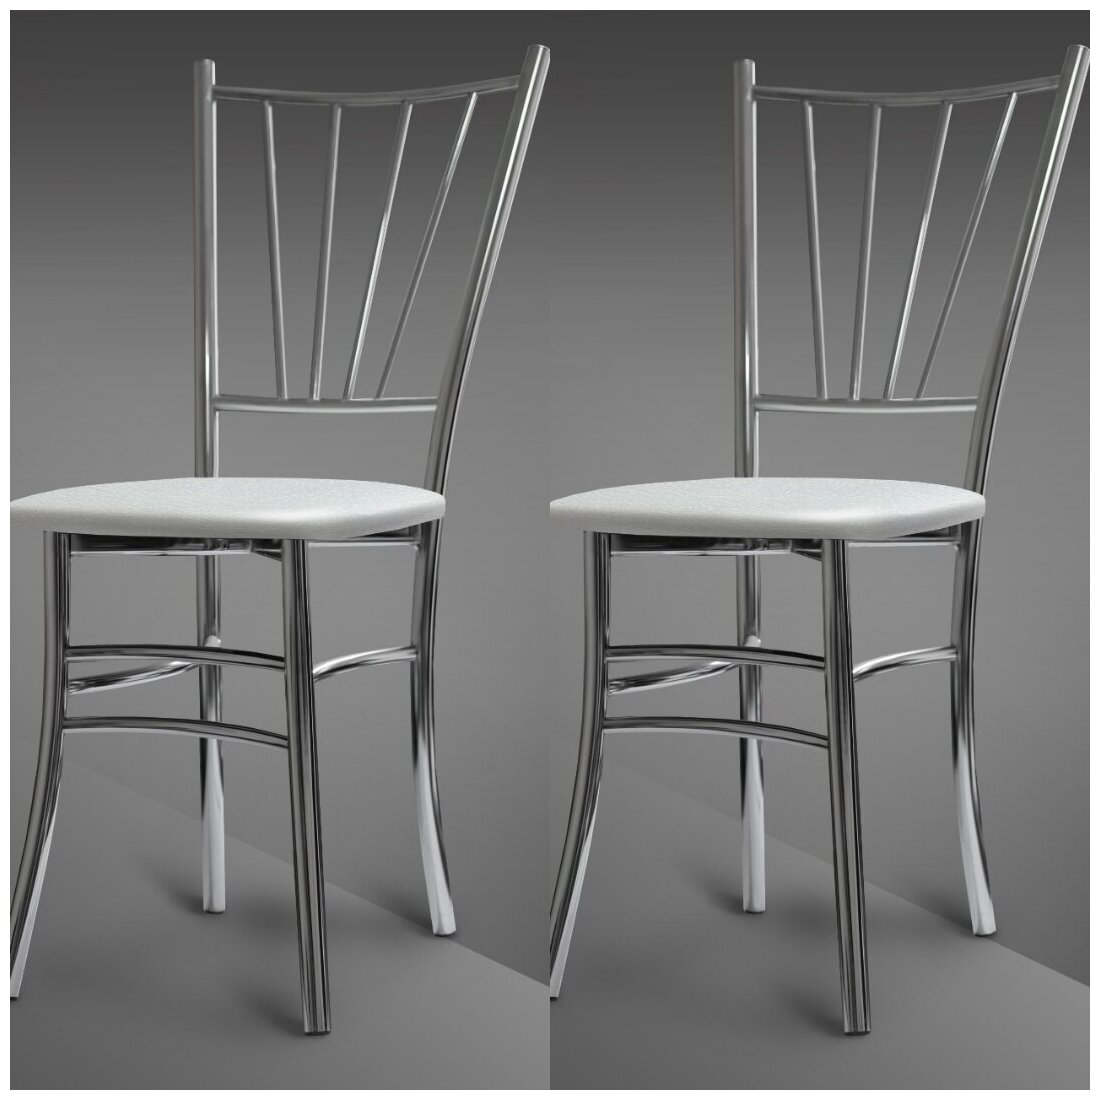 Кухонные стулья, Крис, для обеденной зоны, столовой, кухни, дома, дачи, металлический, хромированный корпус, цвет сиденья белый, экокожа